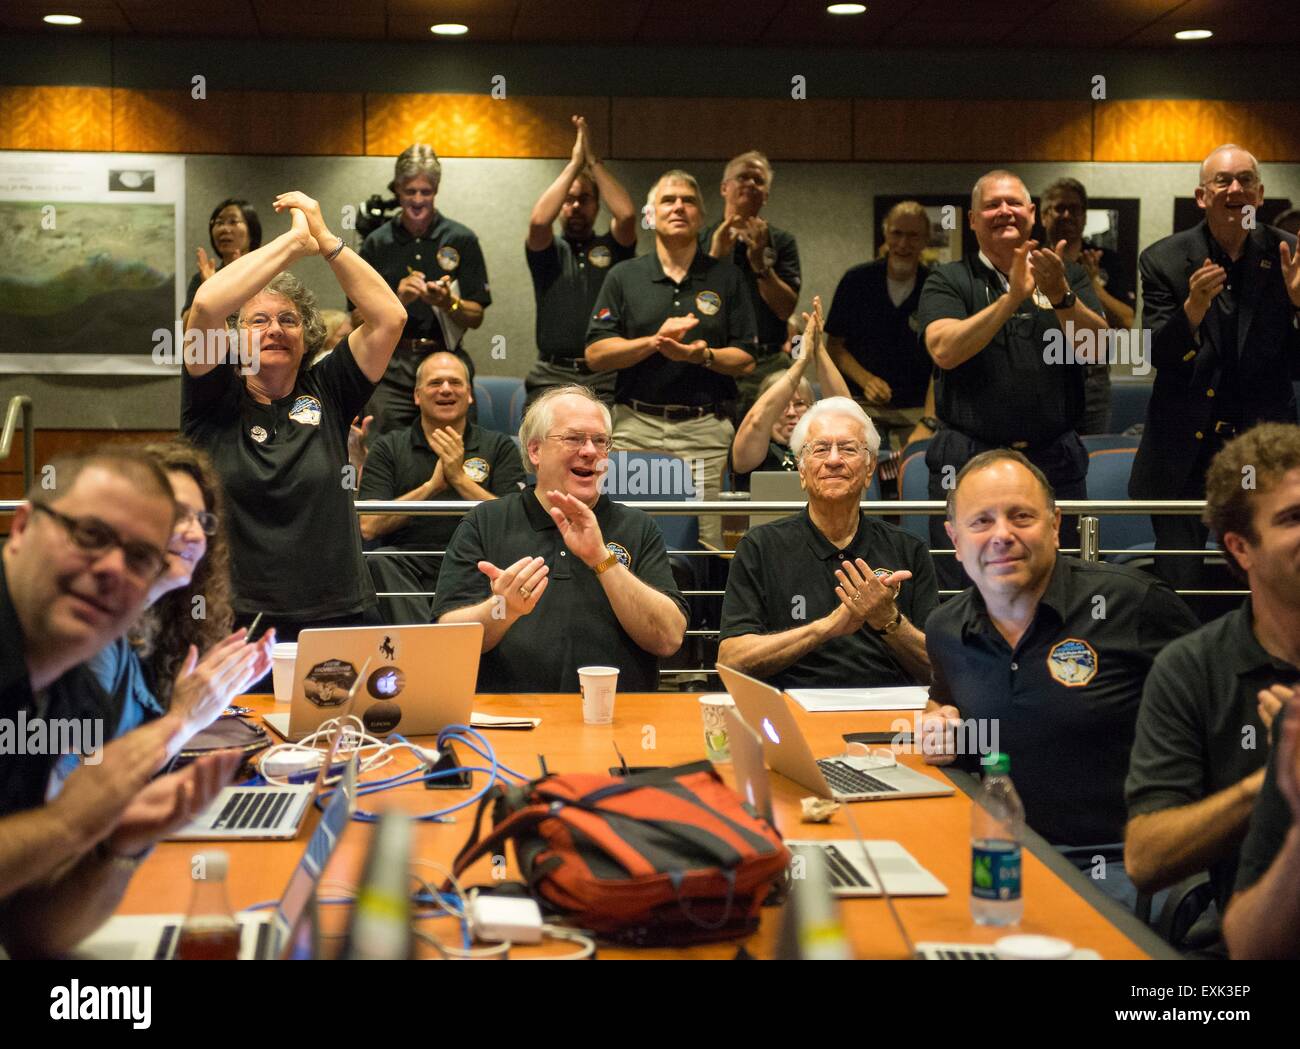 Laurel, Maryland, USA. 14 juillet, 2015. Les membres de l'équipe scientifique de Nouveaux Horizons réagir de voir la dernière image la plus nette et de Pluton pendant le survol de la sonde spatiale à l'Université Johns Hopkins University Applied Physics Laboratory, 14 juillet 2015 à Laurel, Maryland. Banque D'Images